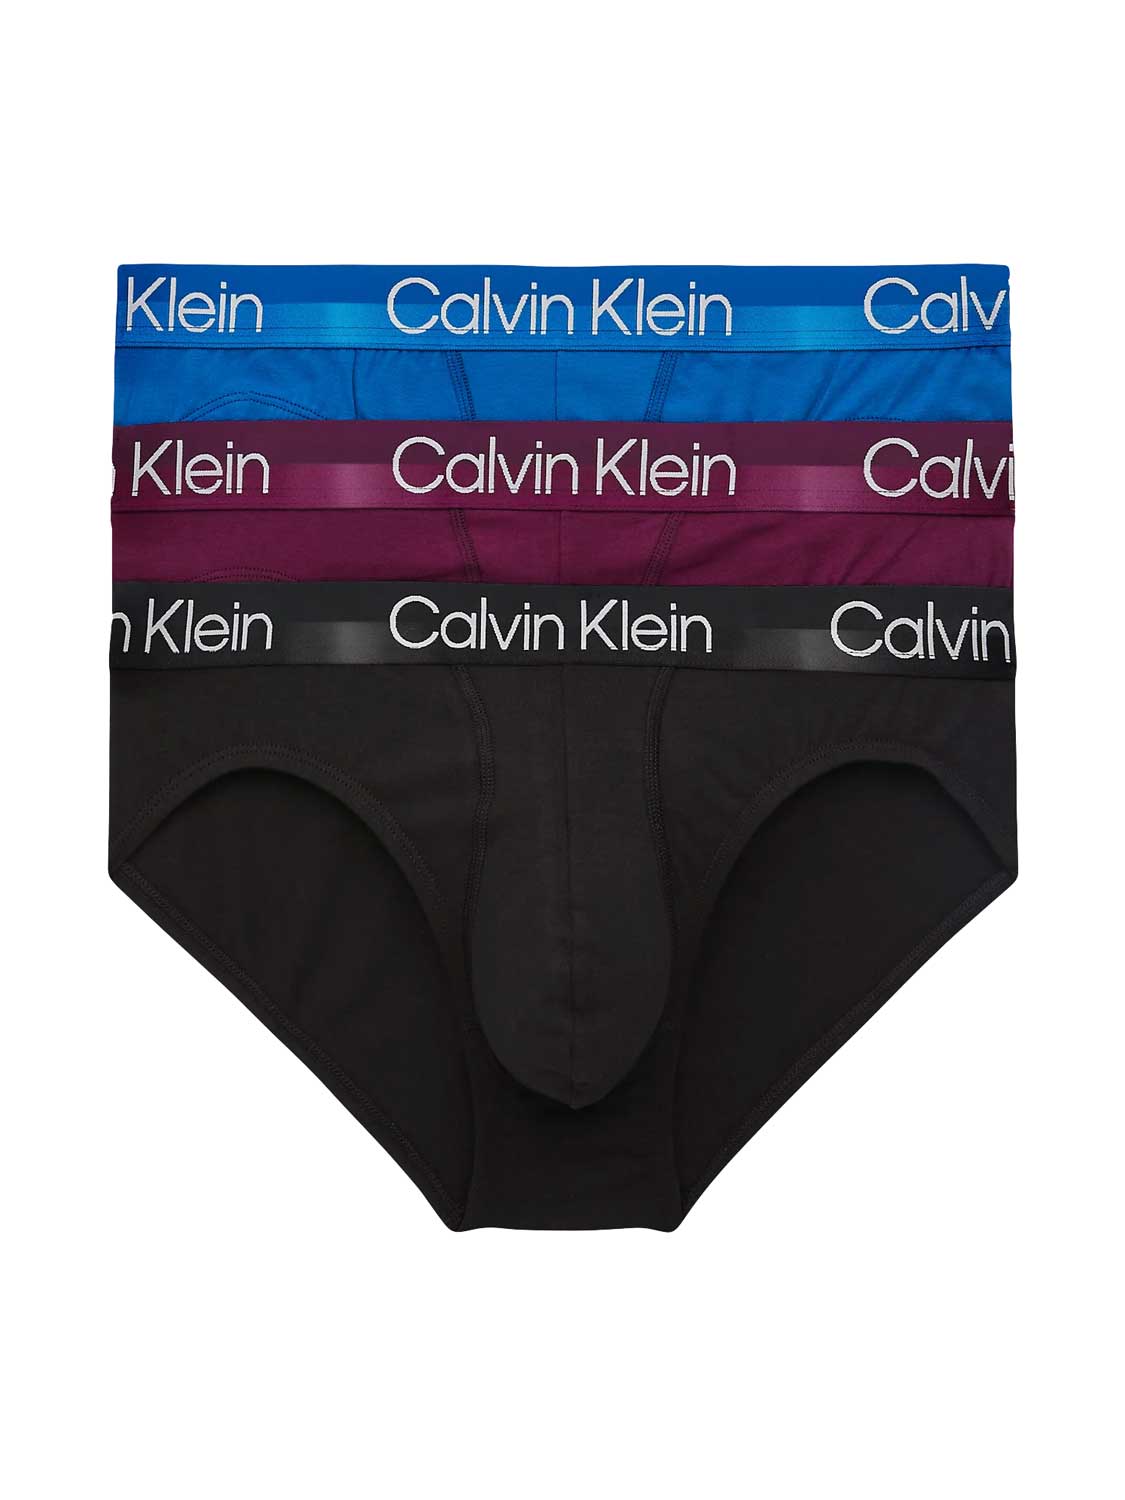 Calvin Klein - Heren - 3-Pack Brief - Zwart - Aubergine - Blauw - M